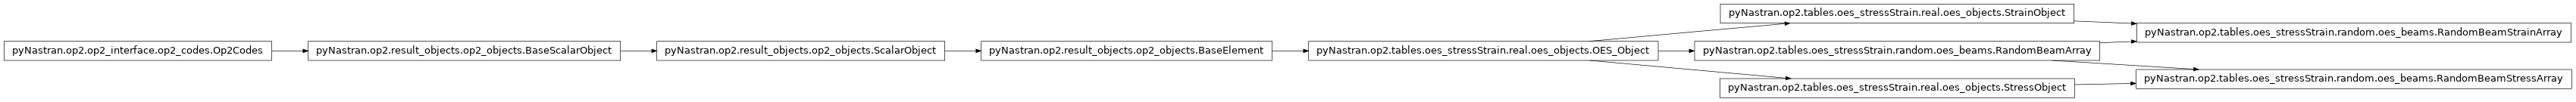 Inheritance diagram of pyNastran.op2.tables.oes_stressStrain.random.oes_beams